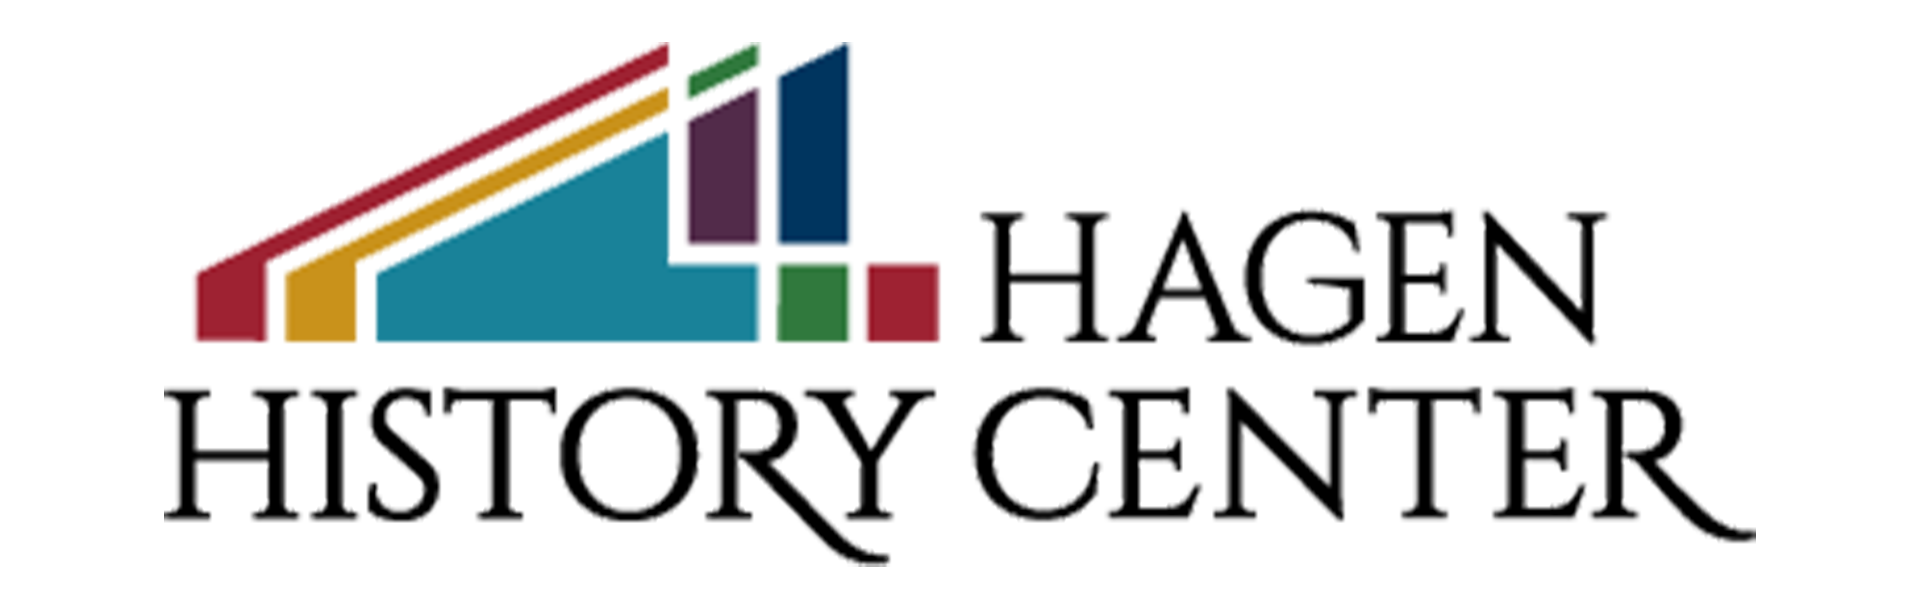 Hagen History Center